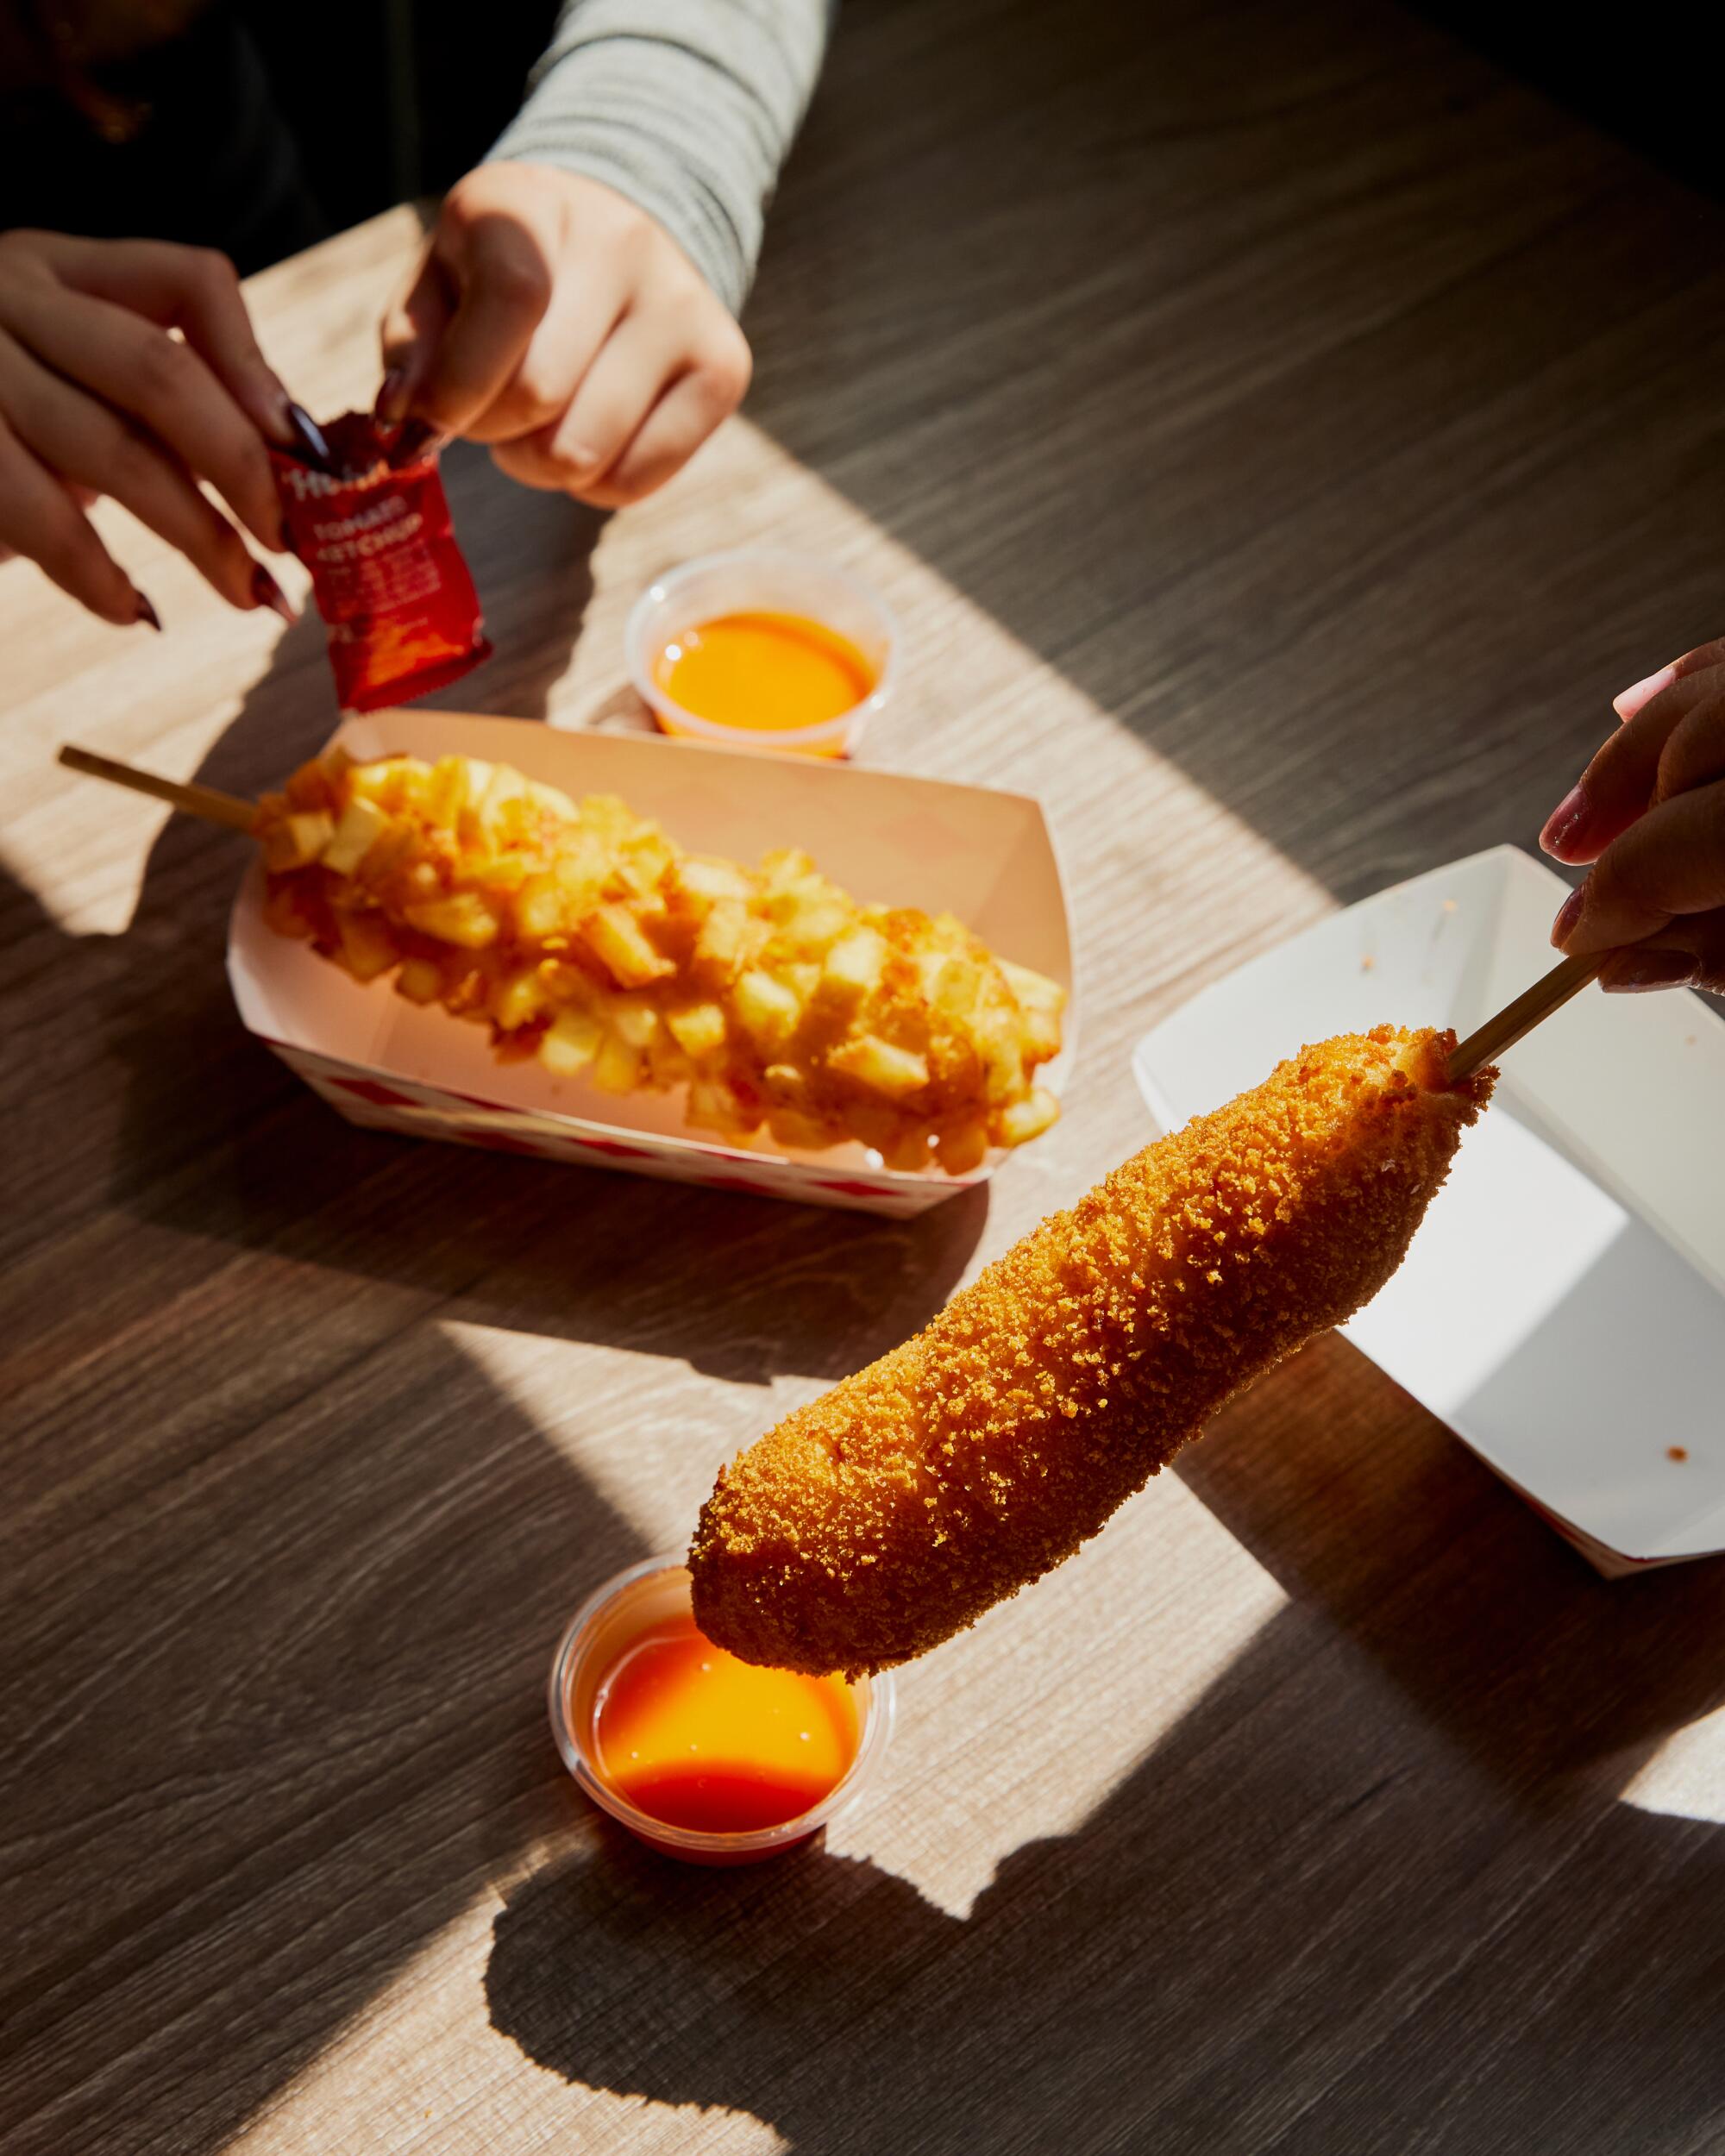 Bestellen Sie Hot Dogs nach koreanischer Art mit einem Reismehlteig und einer Mochi-ähnlichen Textur bei Myungrang Hot Dog.